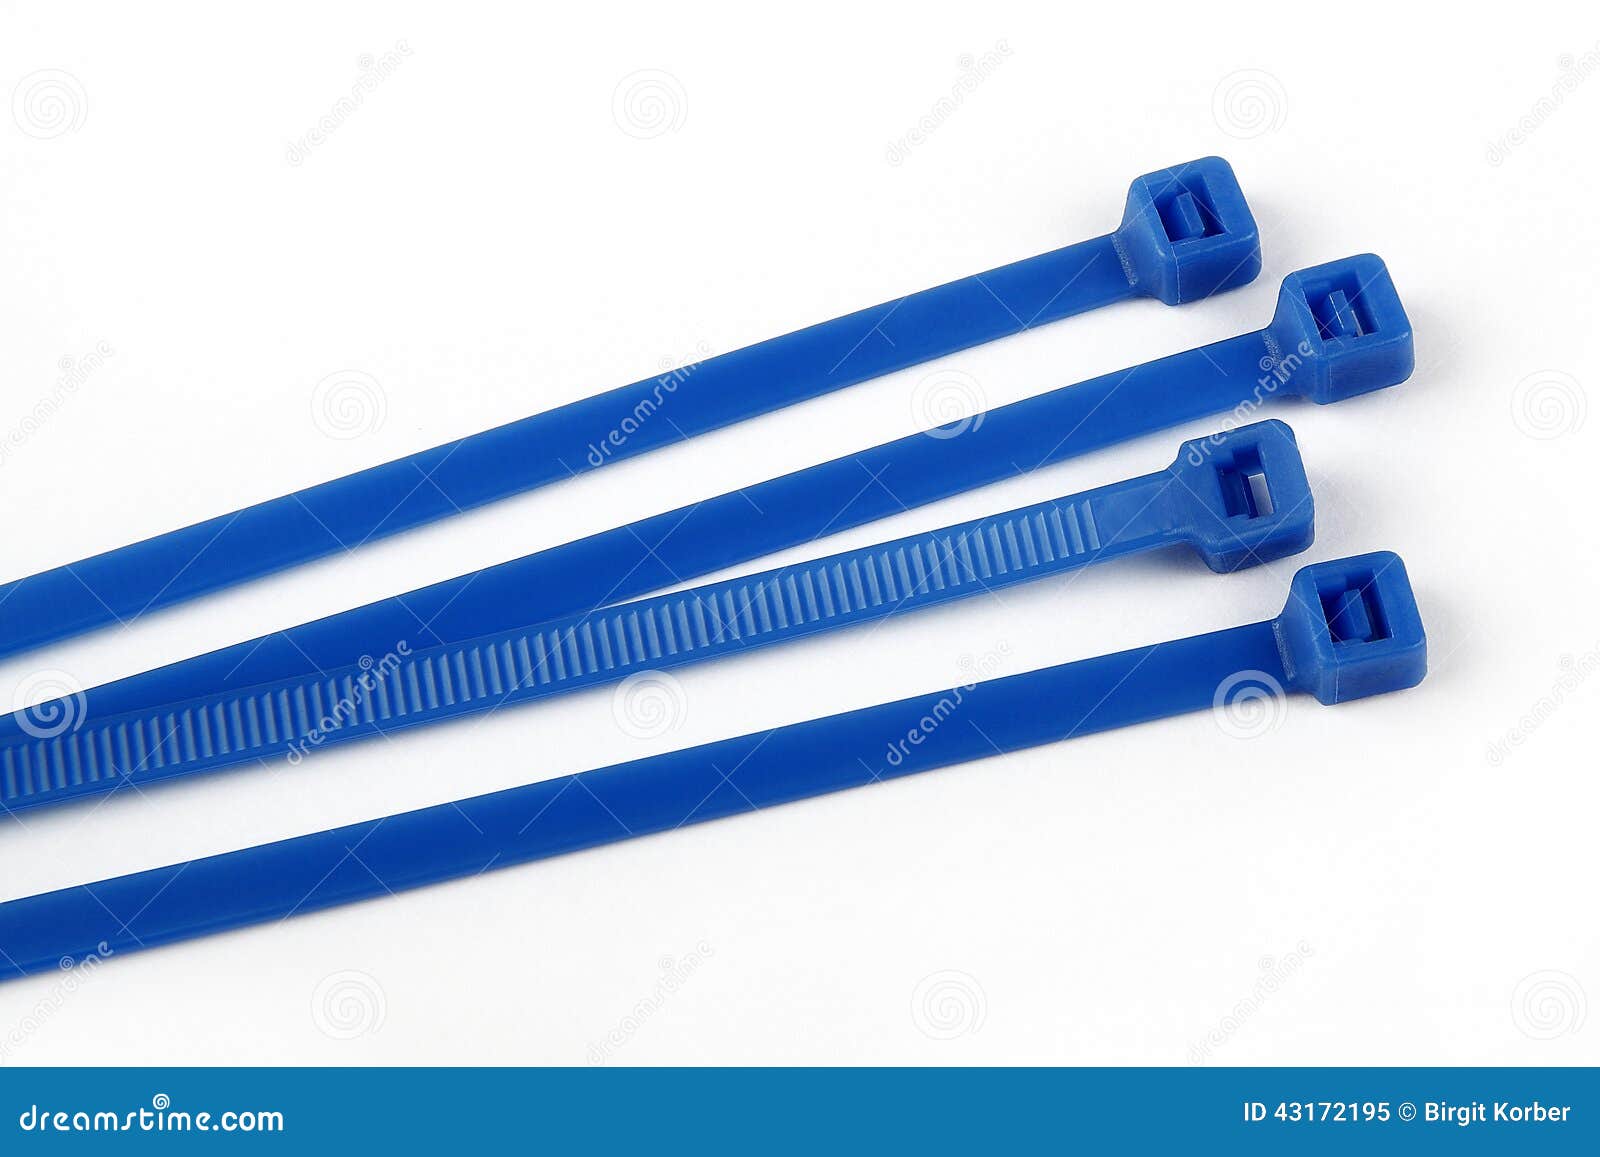 Bridas de plástico en azul imagen de archivo. Imagen de azul - 43172195